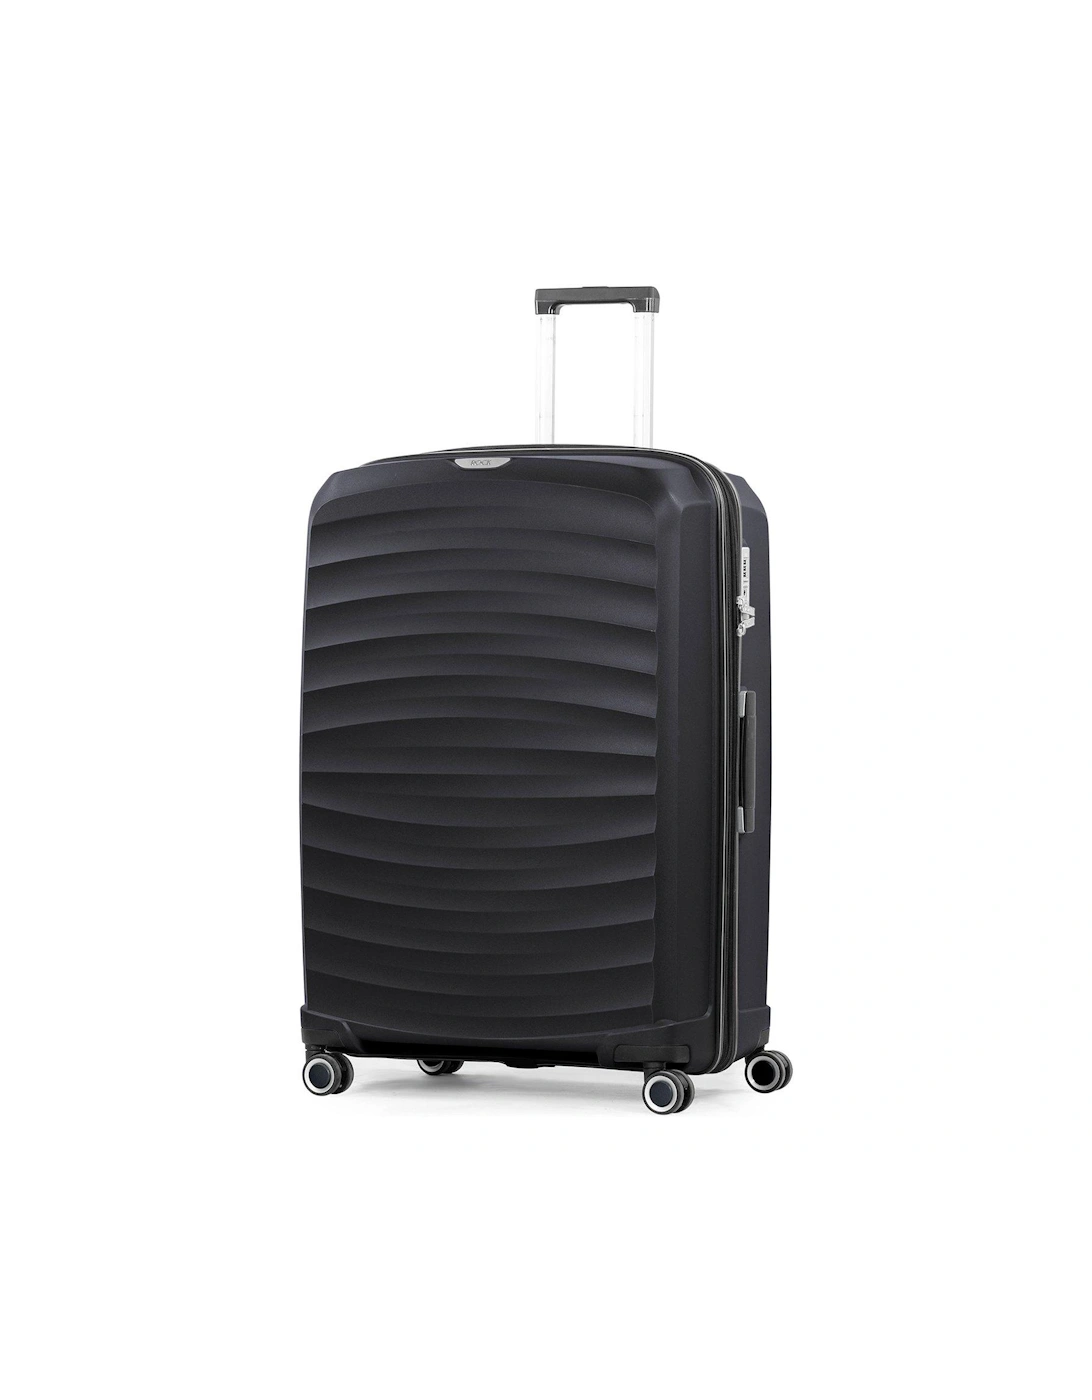 Sunwave Large 8-Wheel Suitcase - Black, 2 of 1